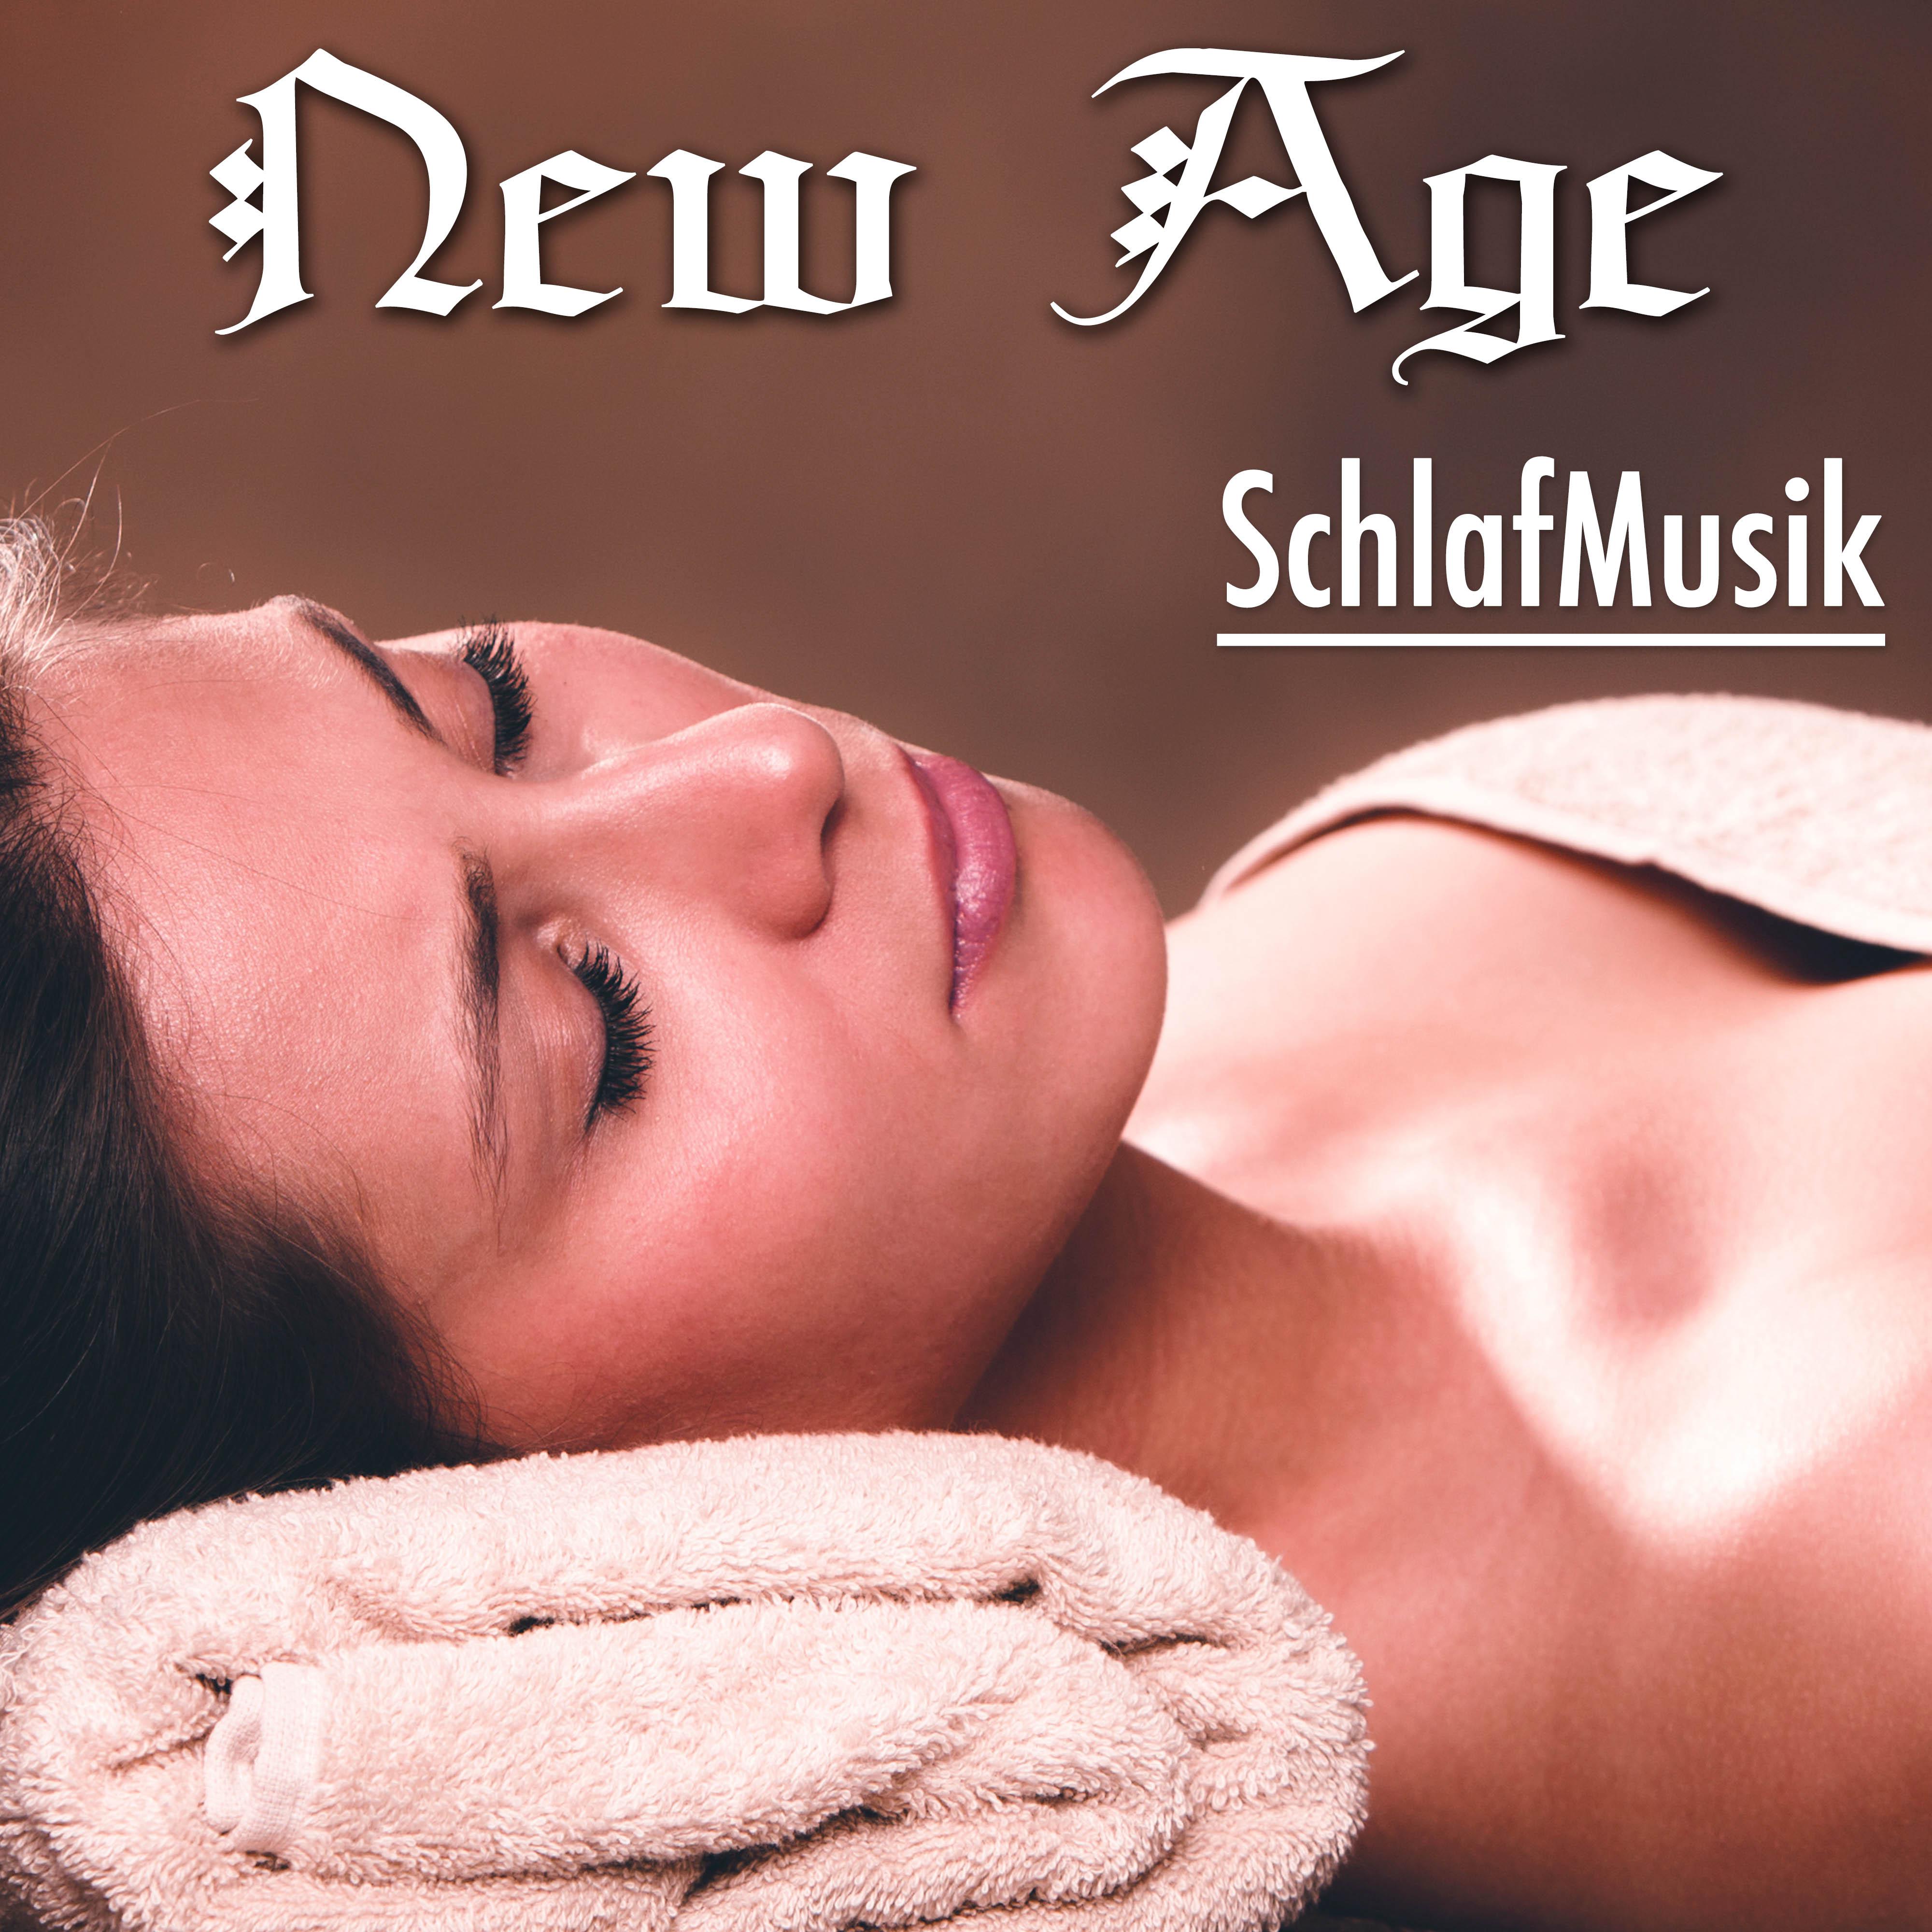 New Age SchlafMusik: Klassische Musik, Heilmusik für Gelassenheit, Tiefenentspannung und Gute und Stille Nacht